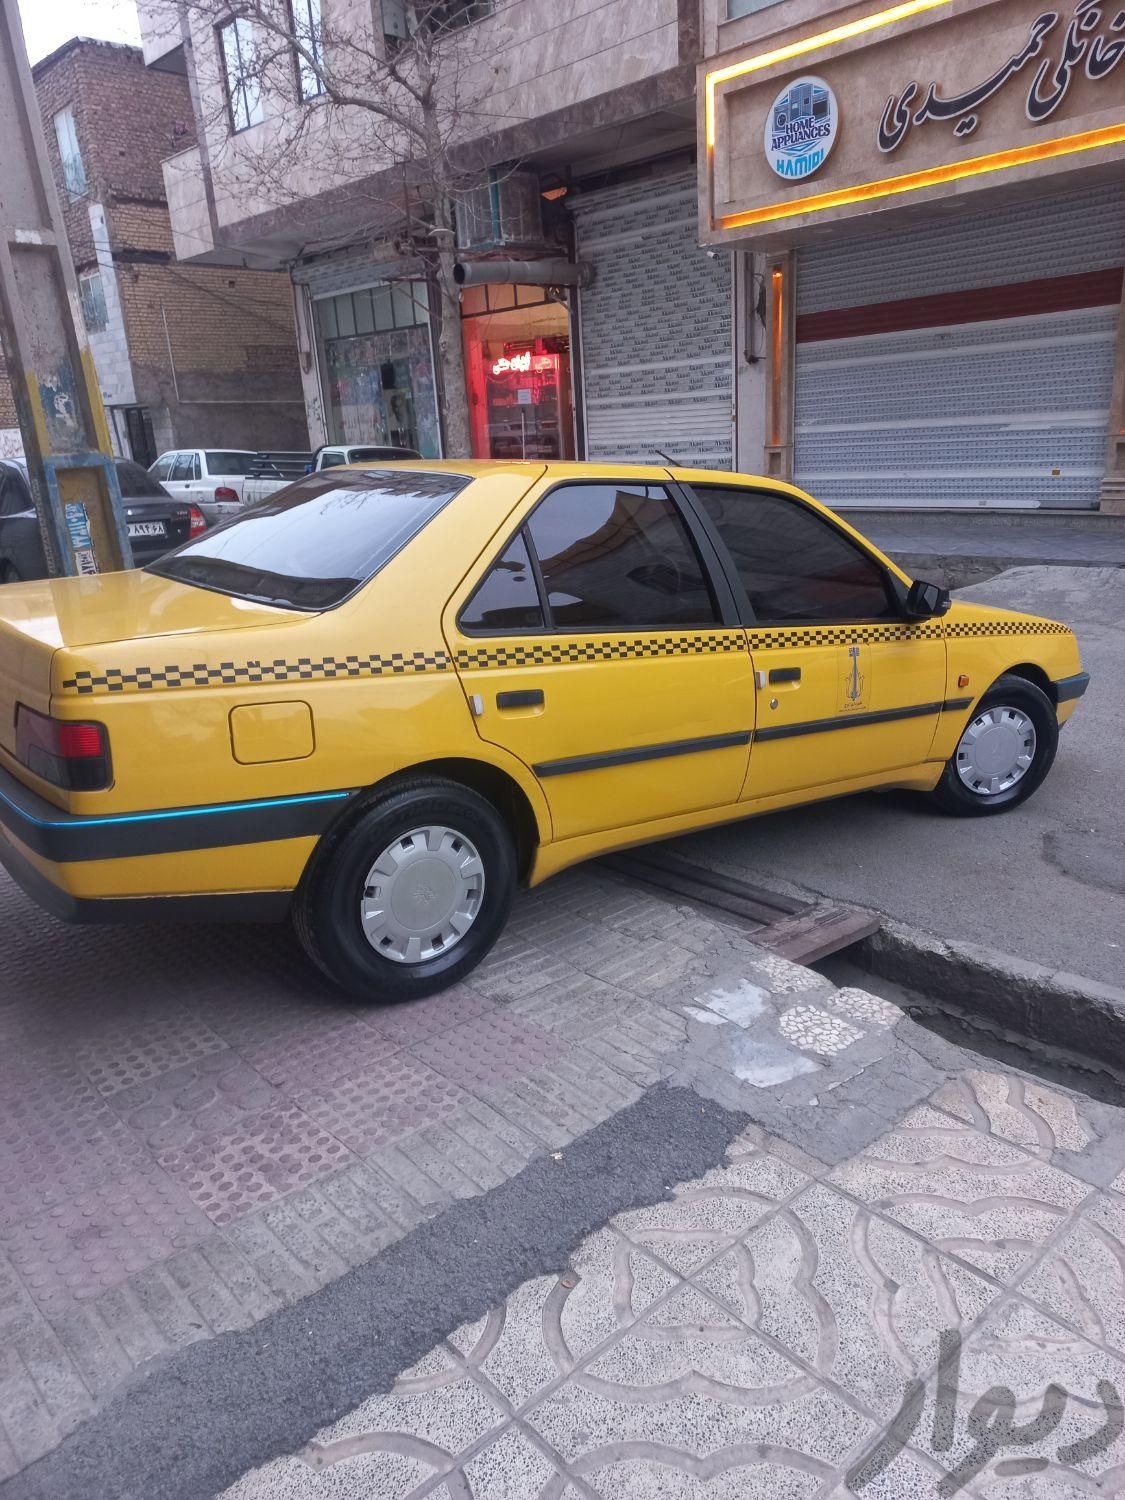 تاکسی پژو ۹۵